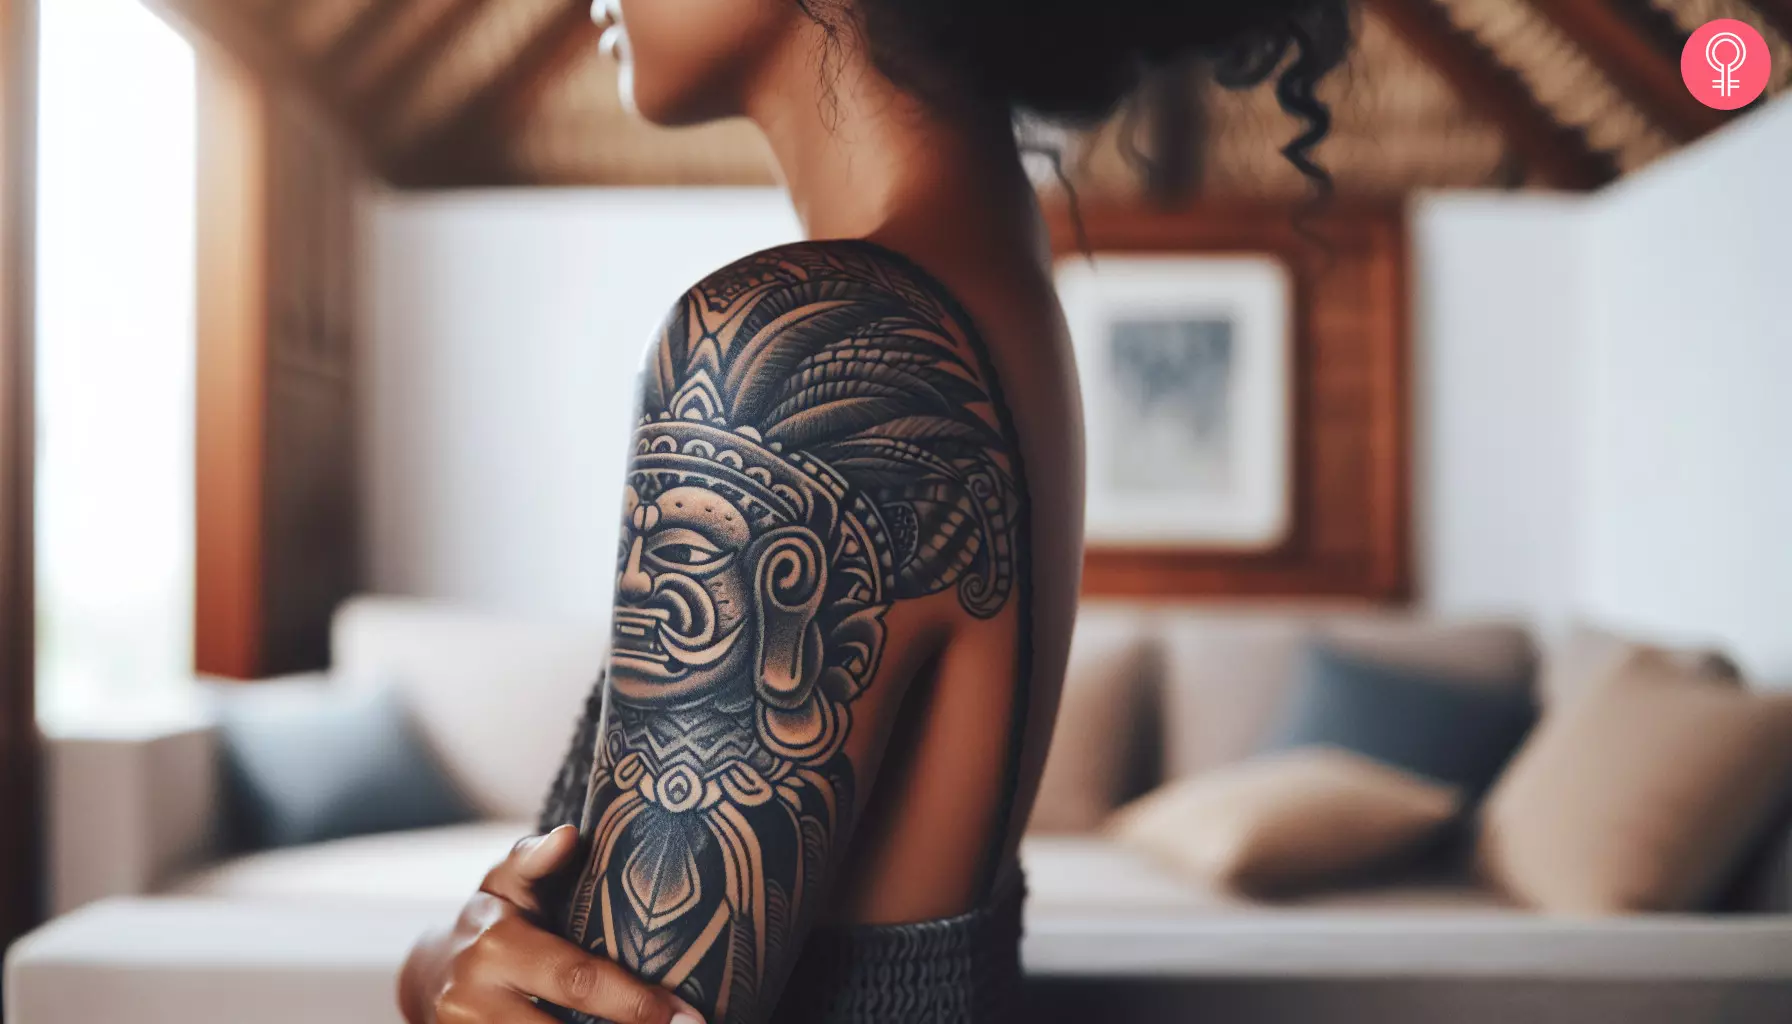 A Mayan god tattoo on a woman’s bicep